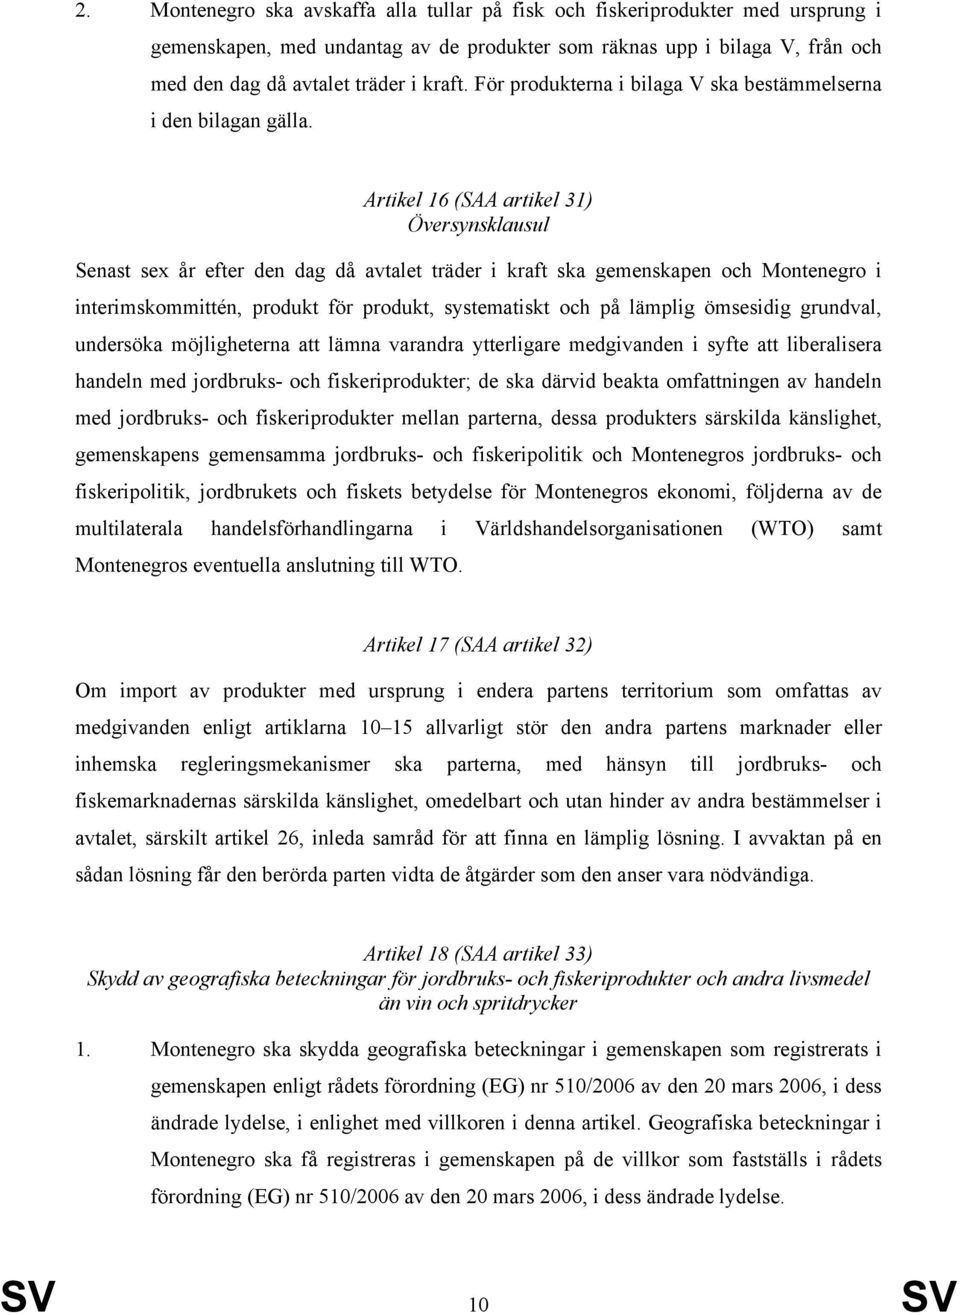 Artikel 16 (SAA artikel 31) Översynsklausul Senast sex år efter den dag då avtalet träder i kraft ska gemenskapen och Montenegro i interimskommittén, produkt för produkt, systematiskt och på lämplig